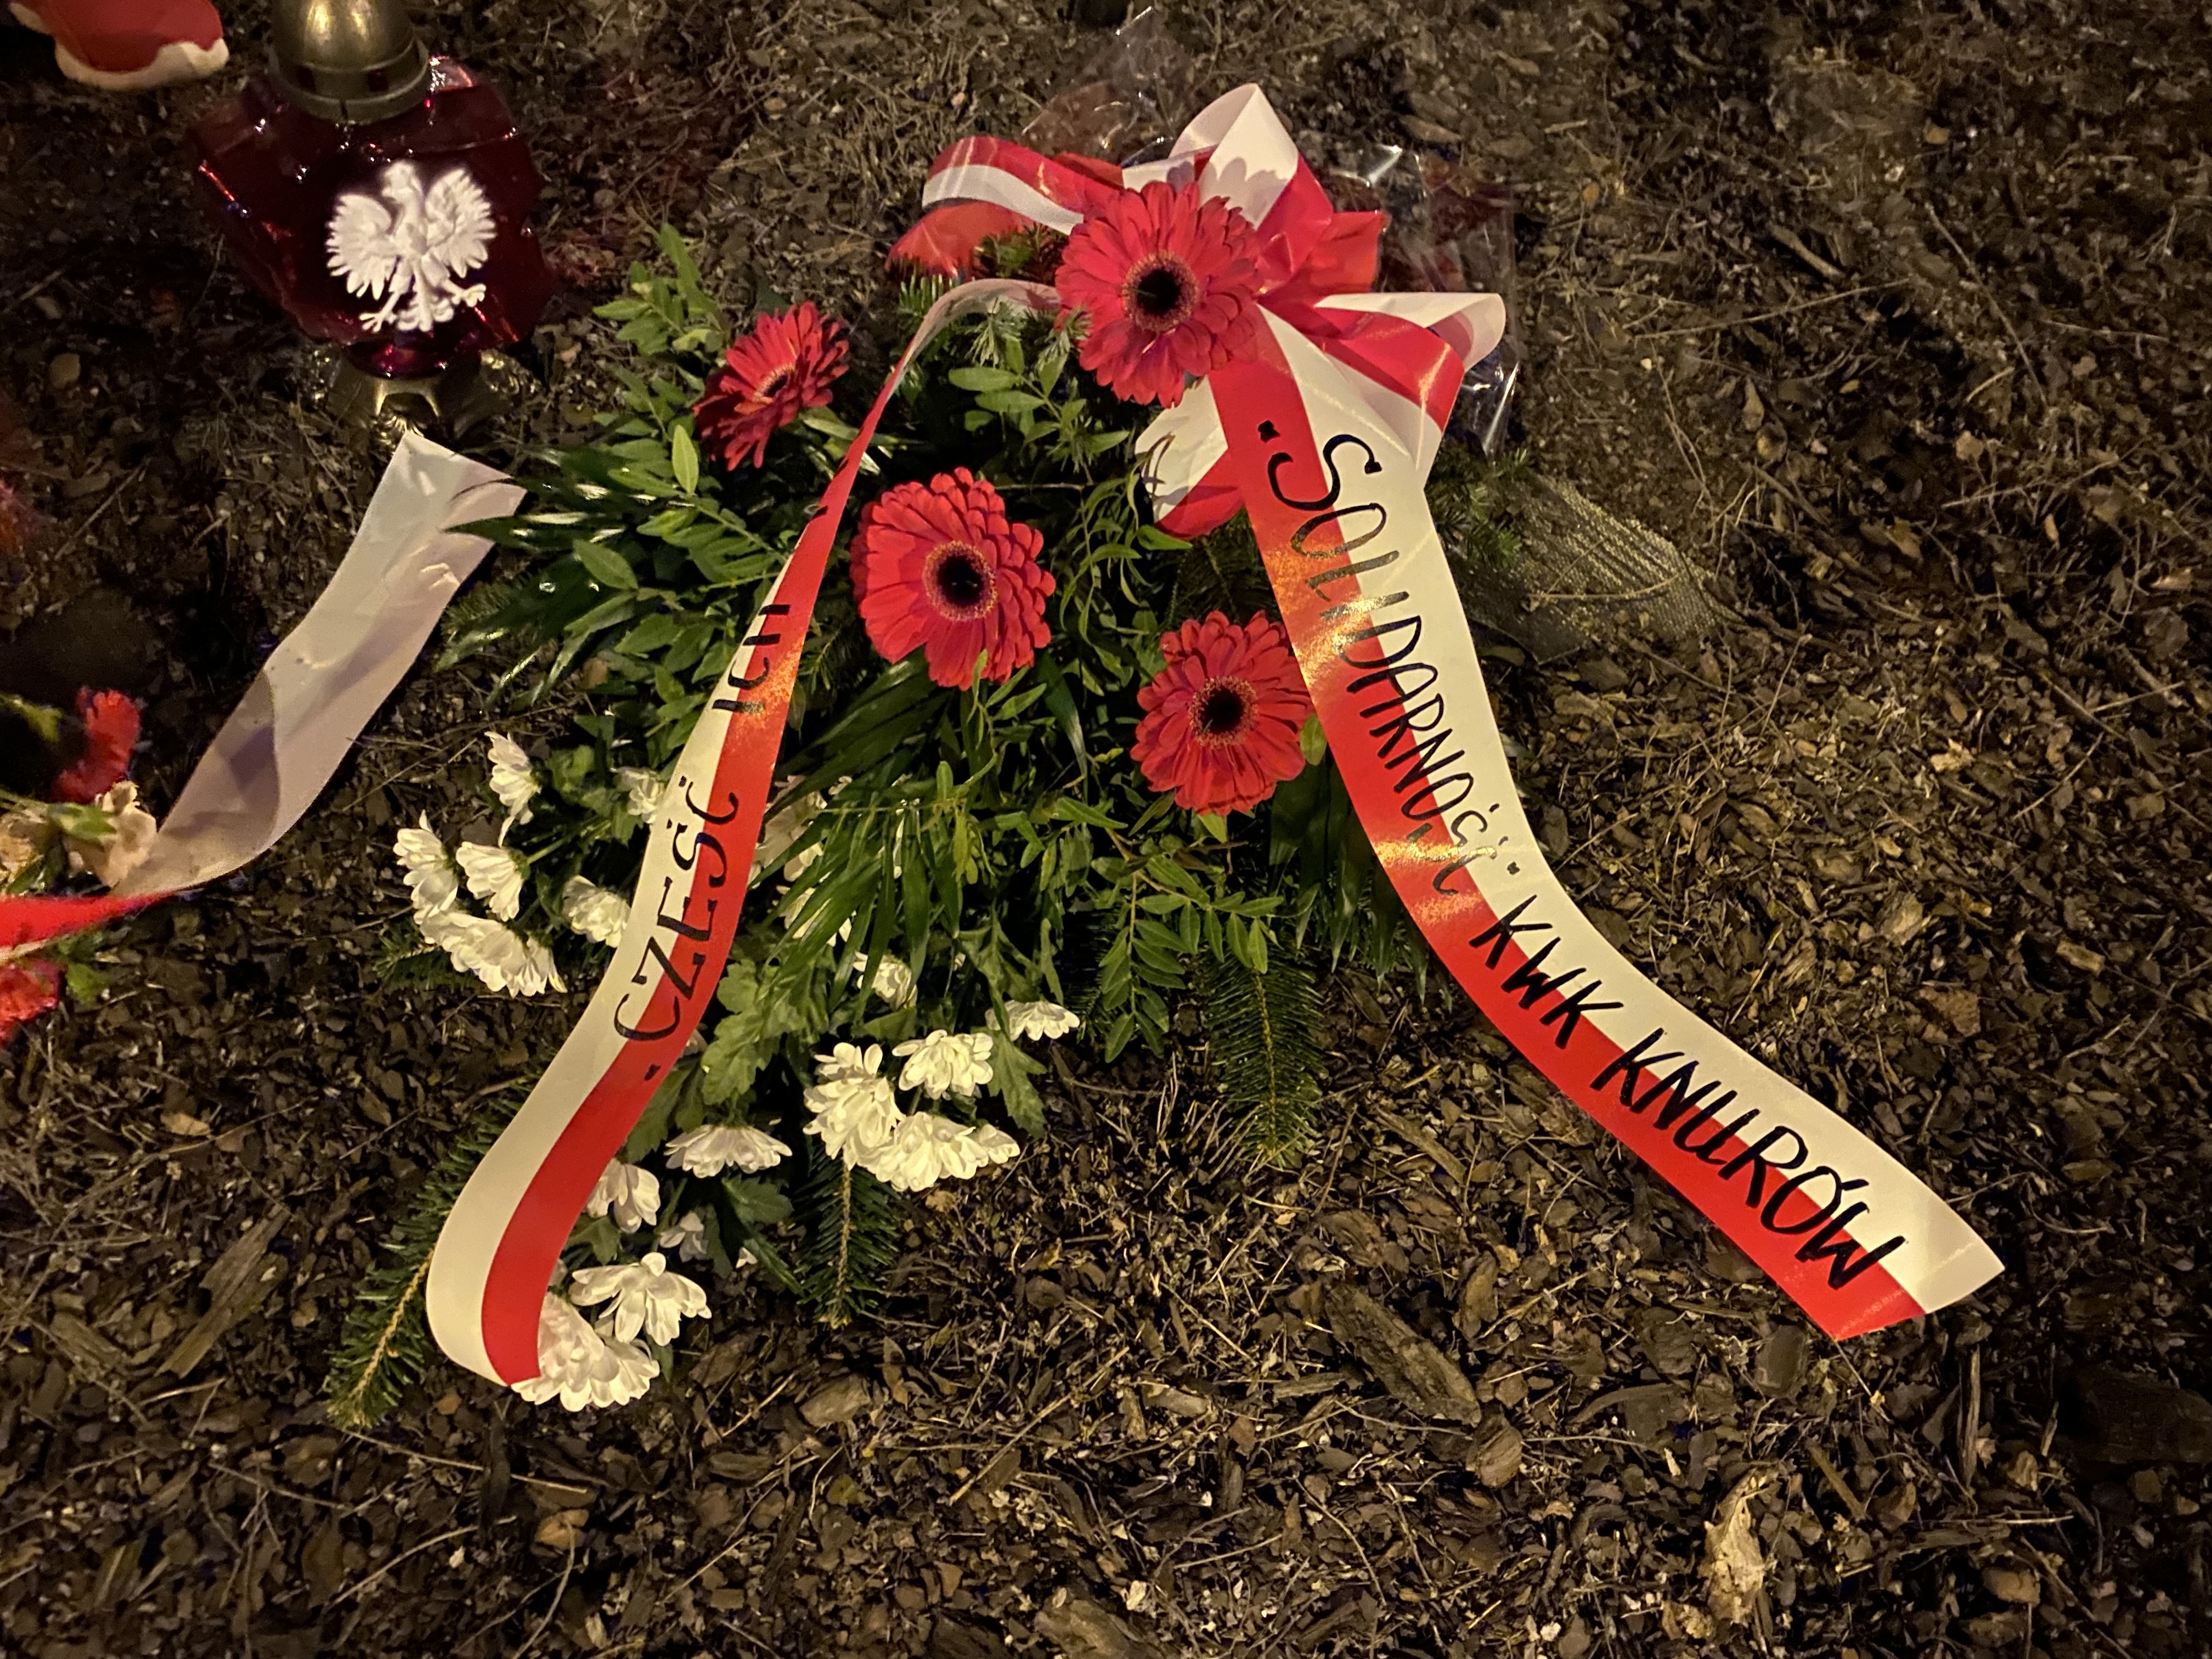 Narodowy Dzień Pamięci "Żołnierzy Wyklętych" w Knurowie